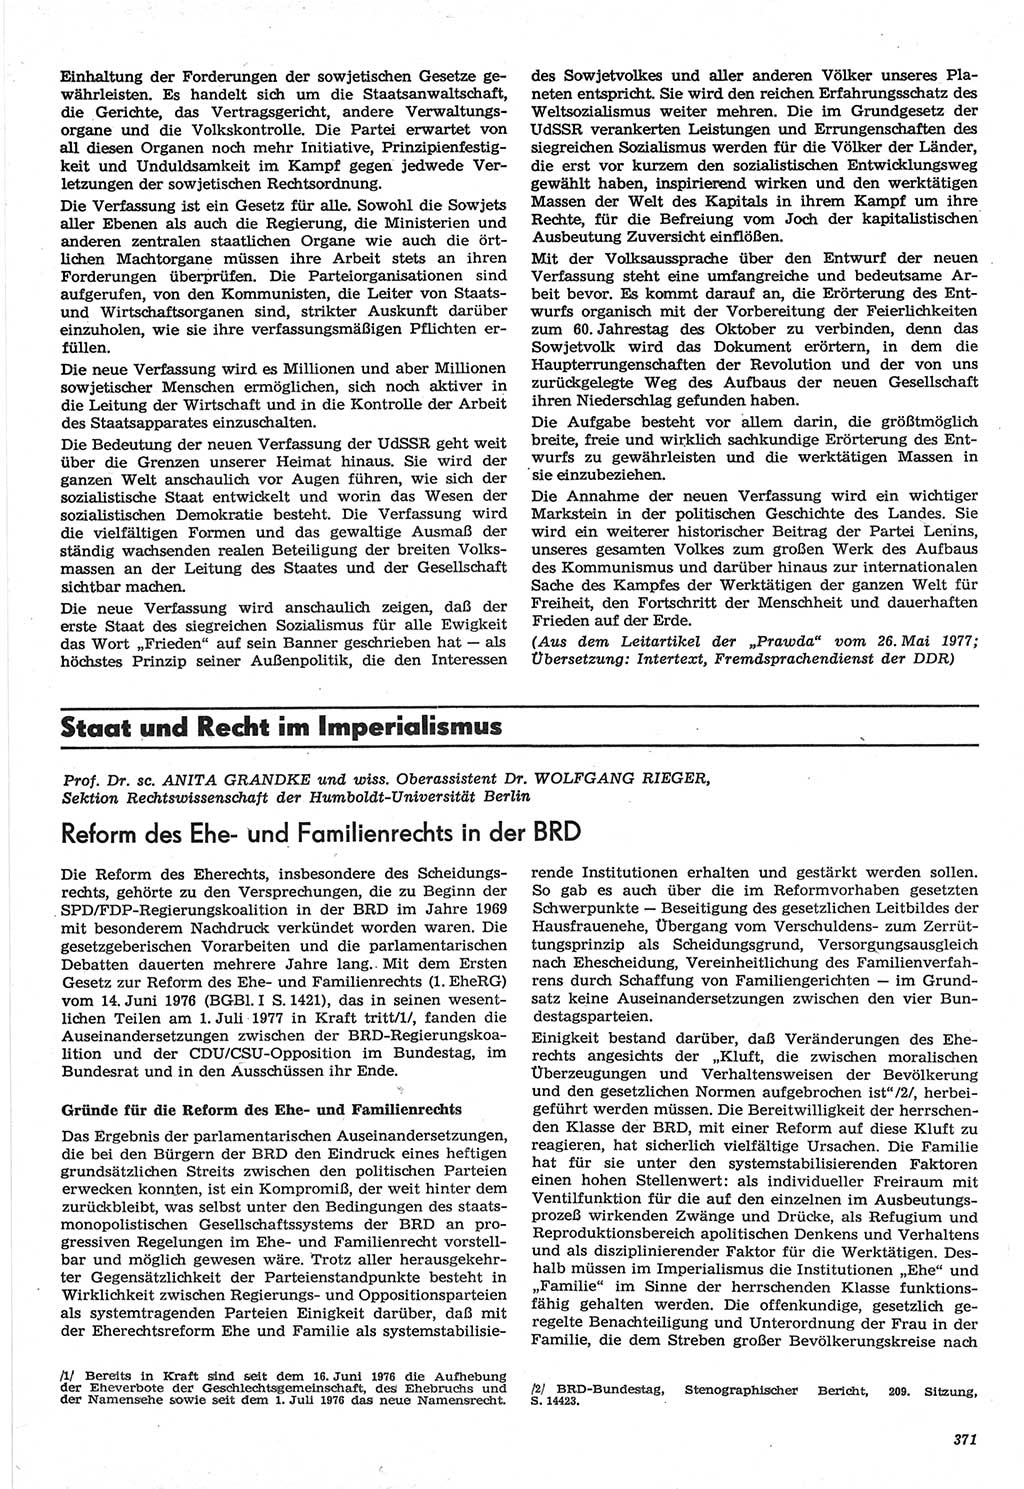 Neue Justiz (NJ), Zeitschrift für Recht und Rechtswissenschaft-Zeitschrift, sozialistisches Recht und Gesetzlichkeit, 31. Jahrgang 1977, Seite 371 (NJ DDR 1977, S. 371)